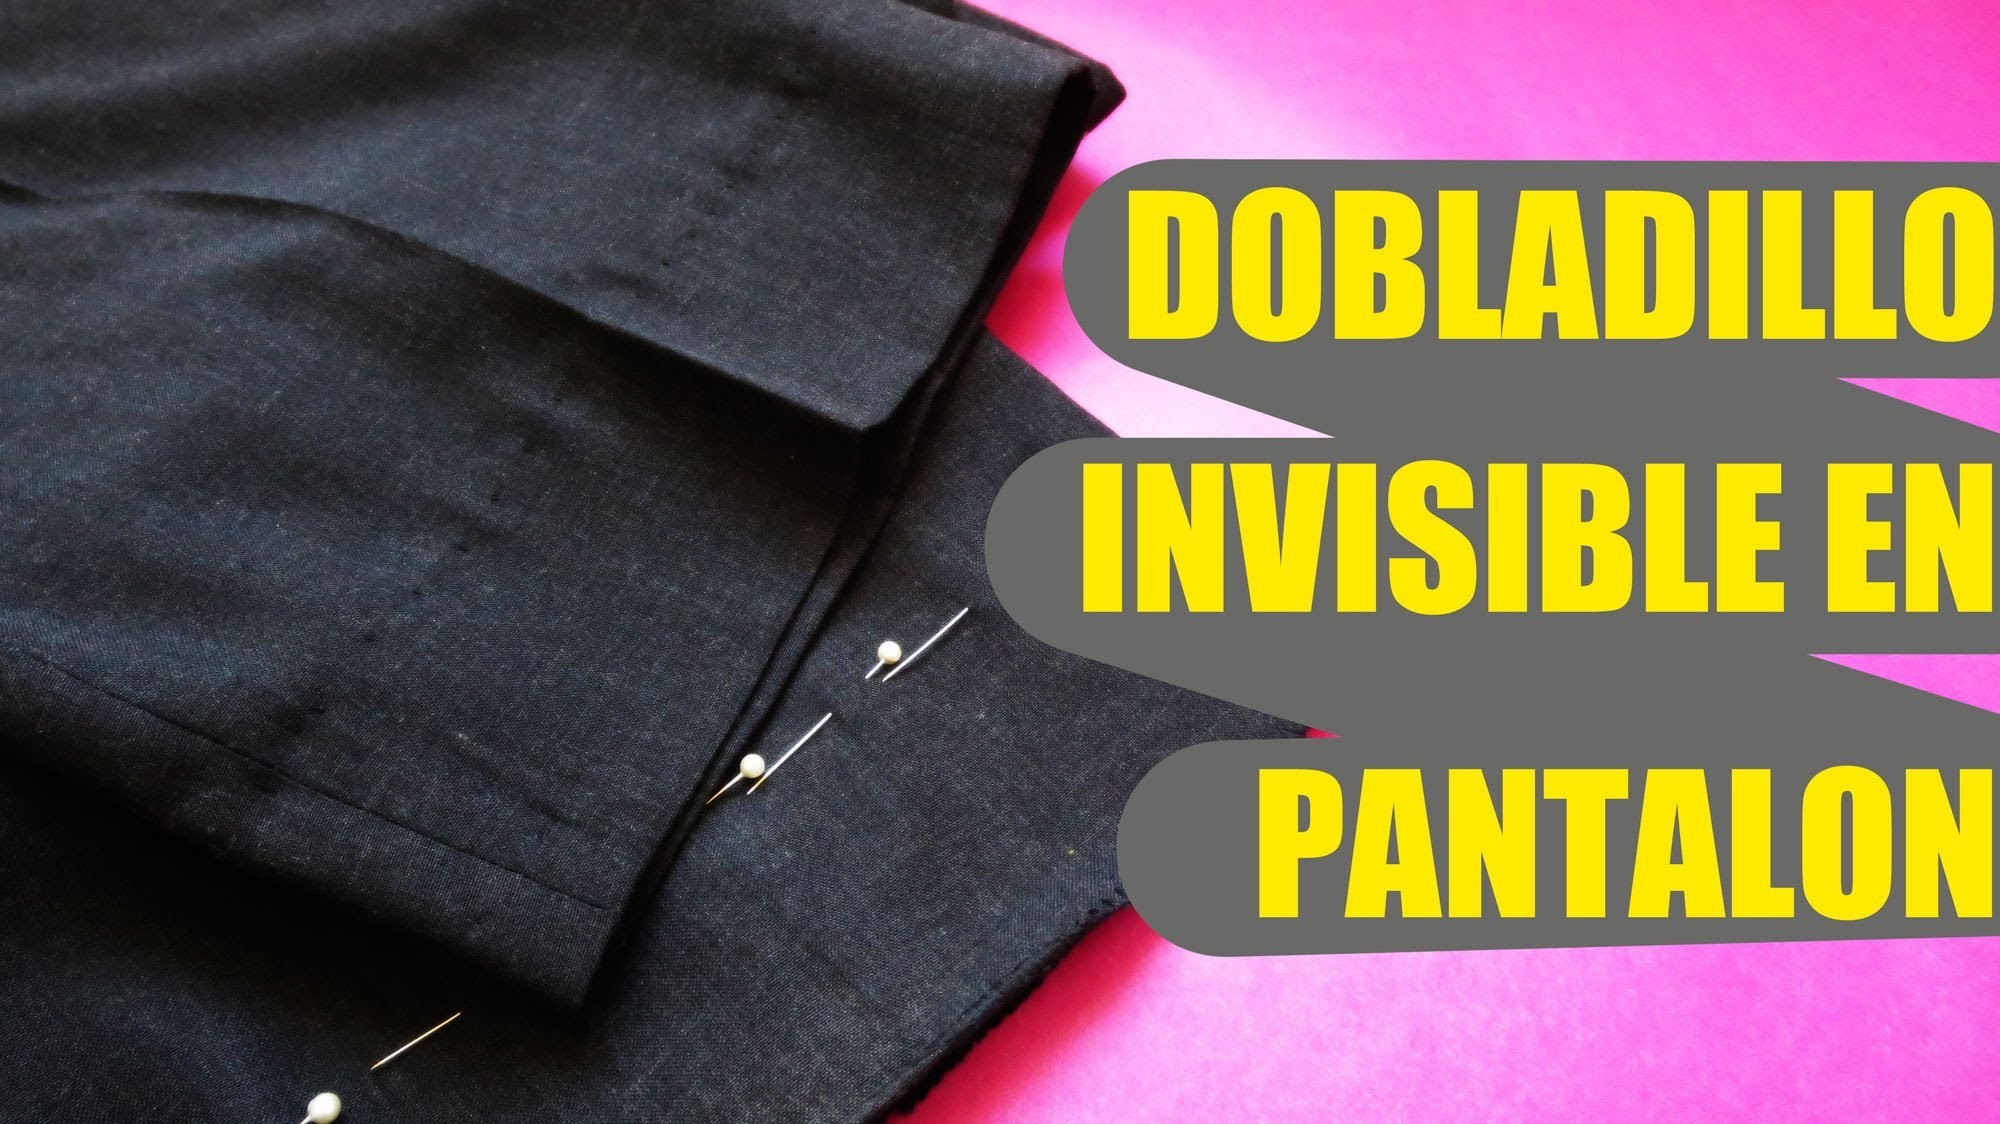 Cómo realizar un dobladillo invisible en pantalón